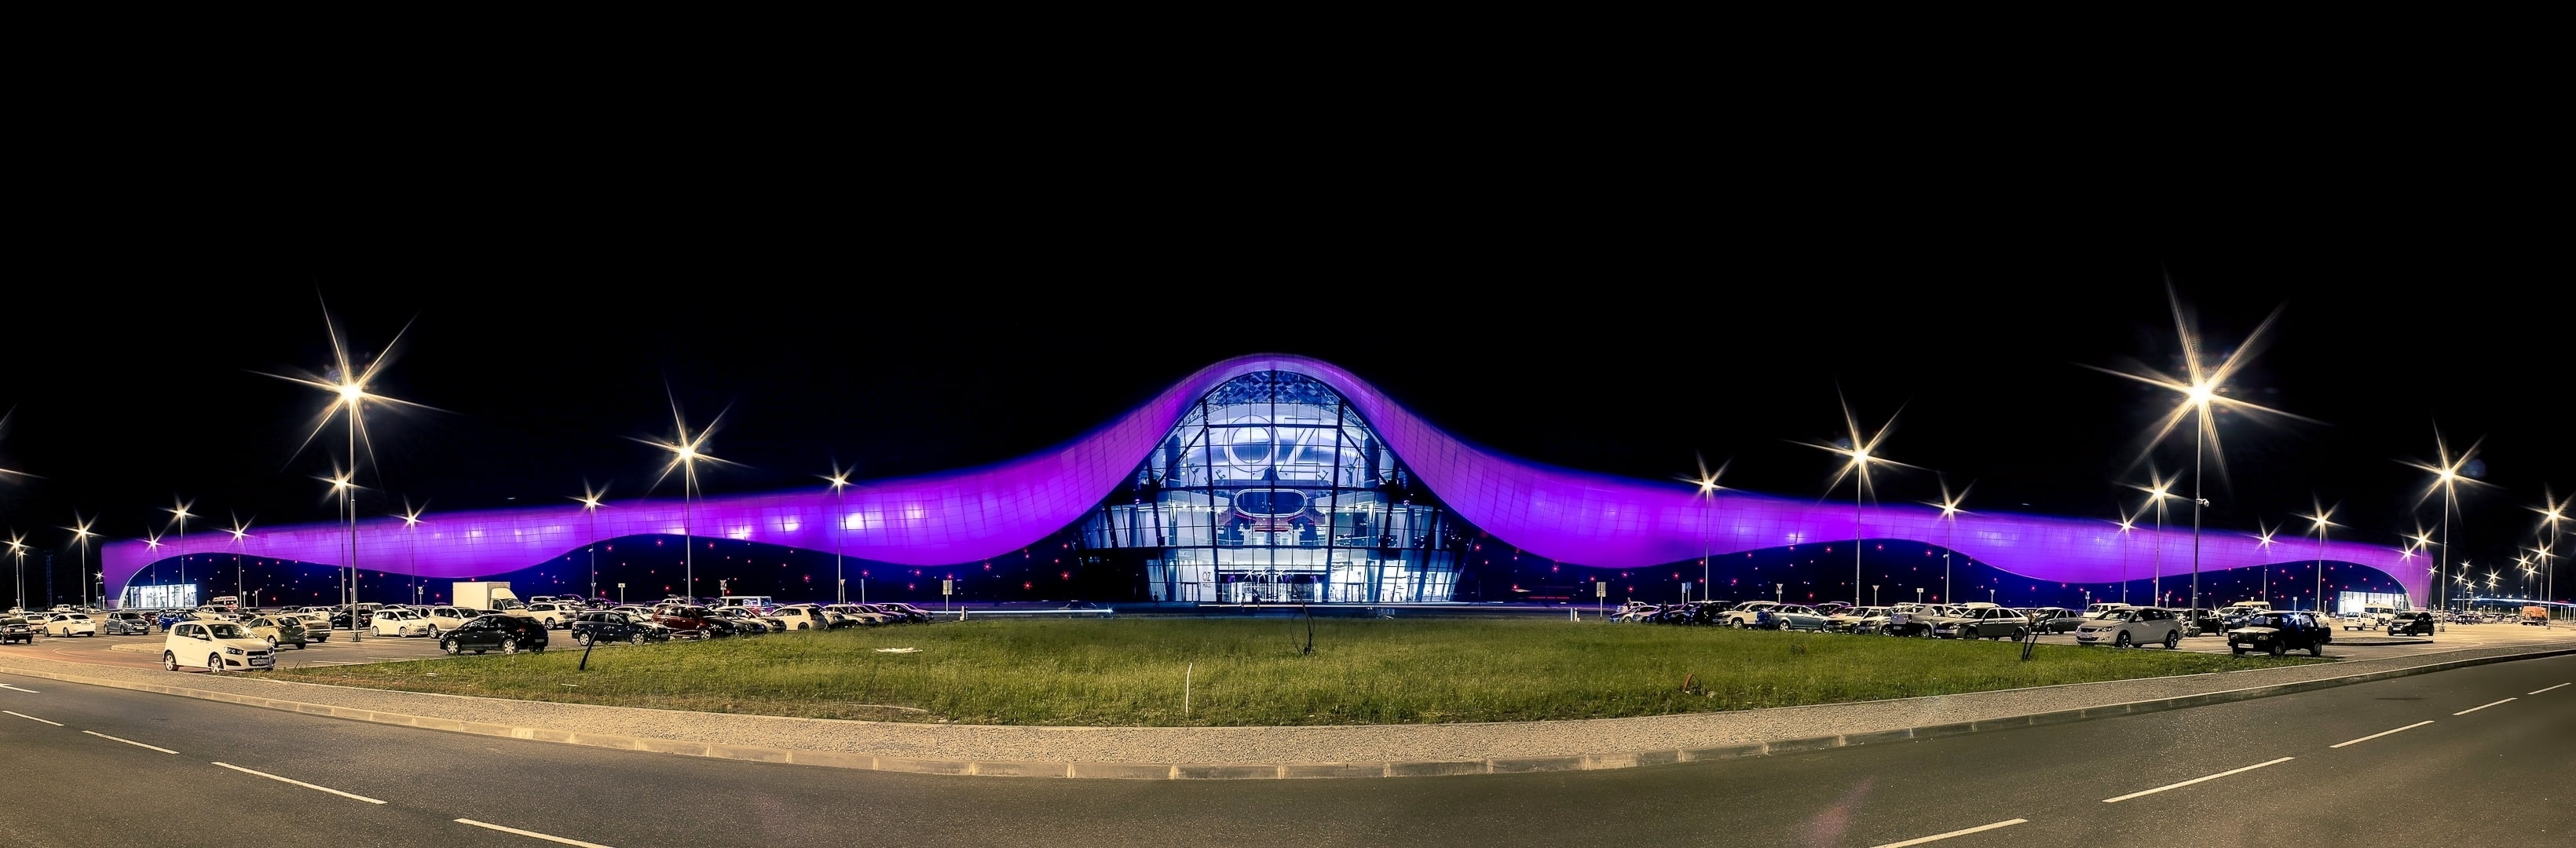 purple and white stadium, night, lights, The city, Russia, Kuban